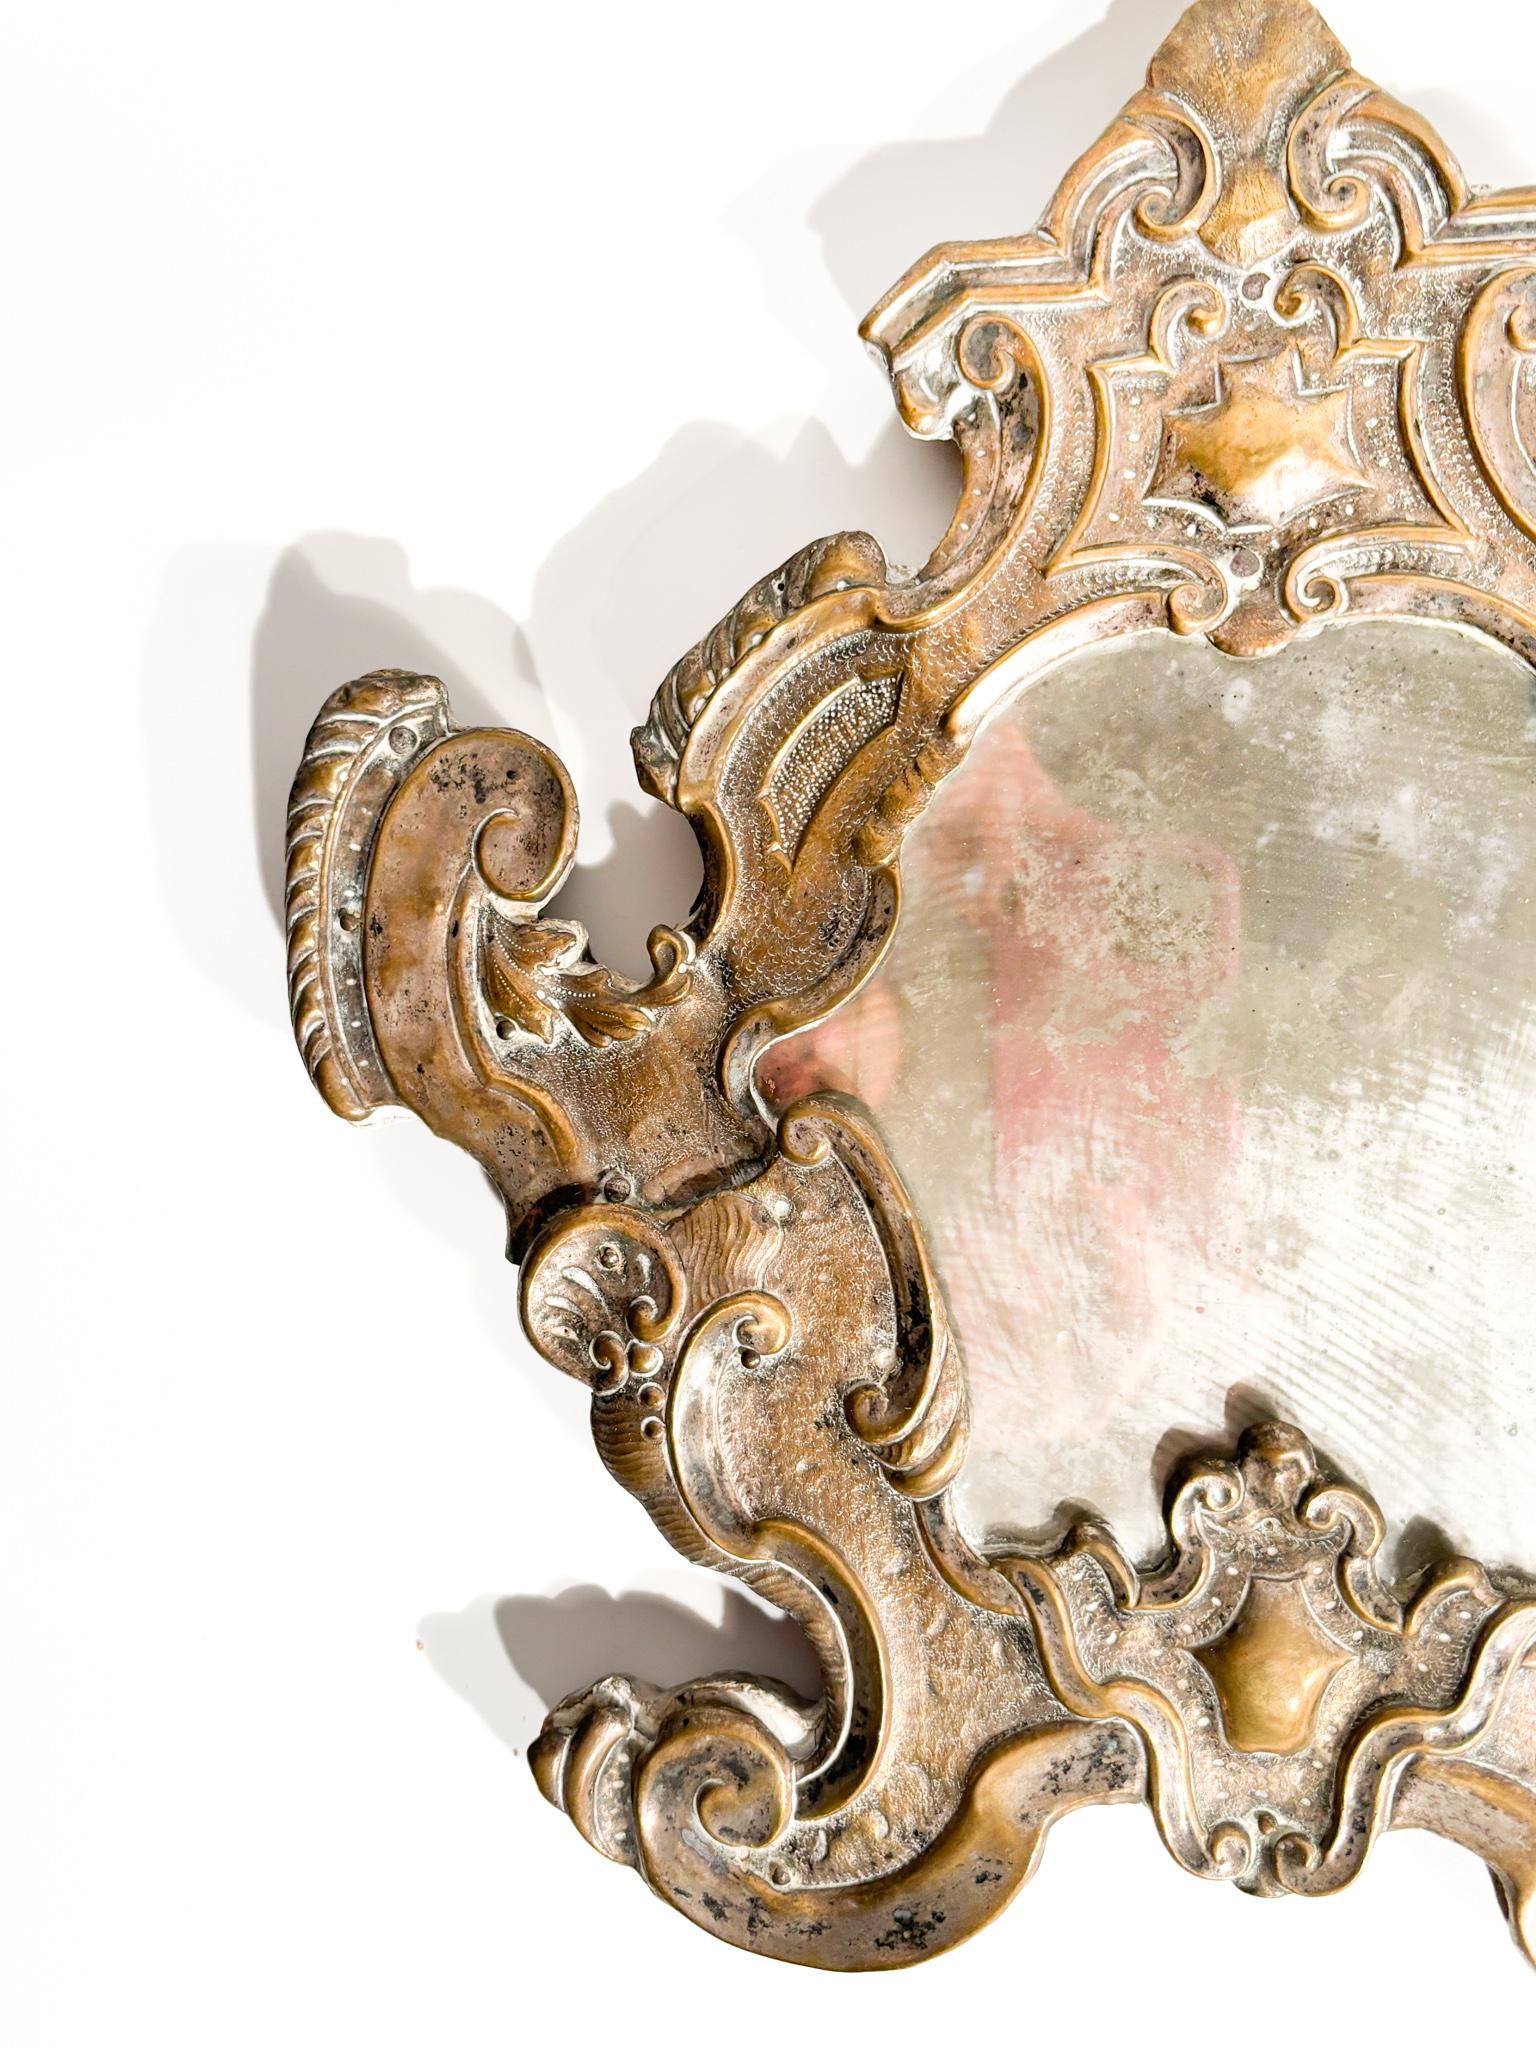 Spiegel aus Silber und Quecksilber aus dem zweiten Teil des 19. Jahrhunderts

Ø cm 32 h cm 31,5

Quecksilberspiegel sind eine alte Art von Spiegeln, bei denen eine dünne Quecksilberschicht eine reflektierende Oberfläche